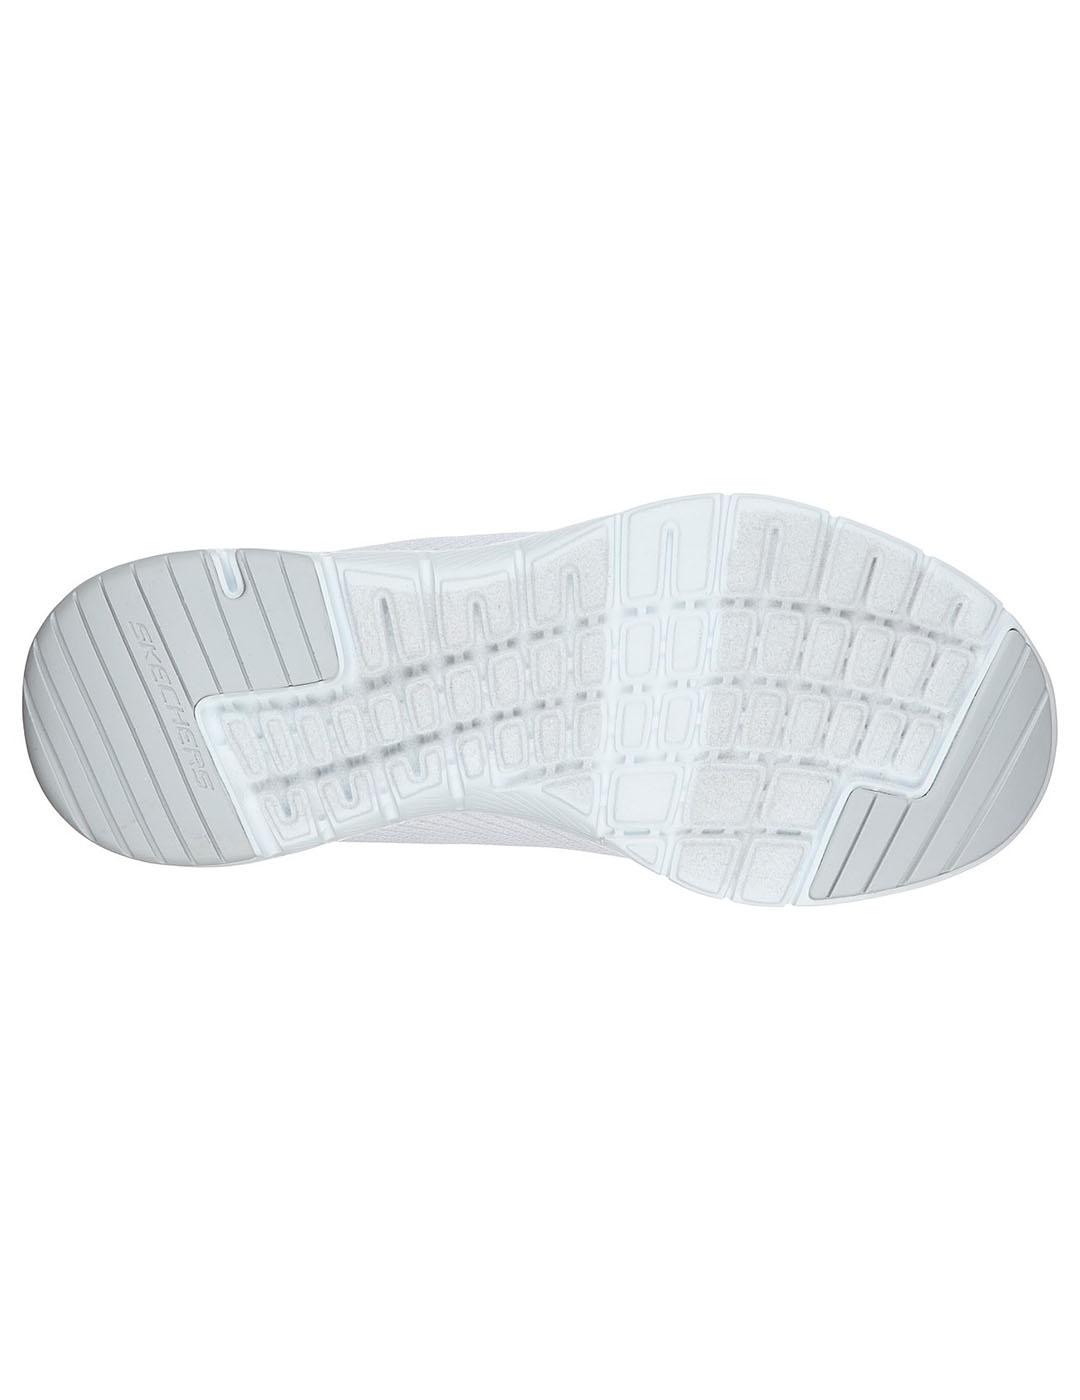 Zapatilla Mujer Skechers Flex A. Blanco/Plata